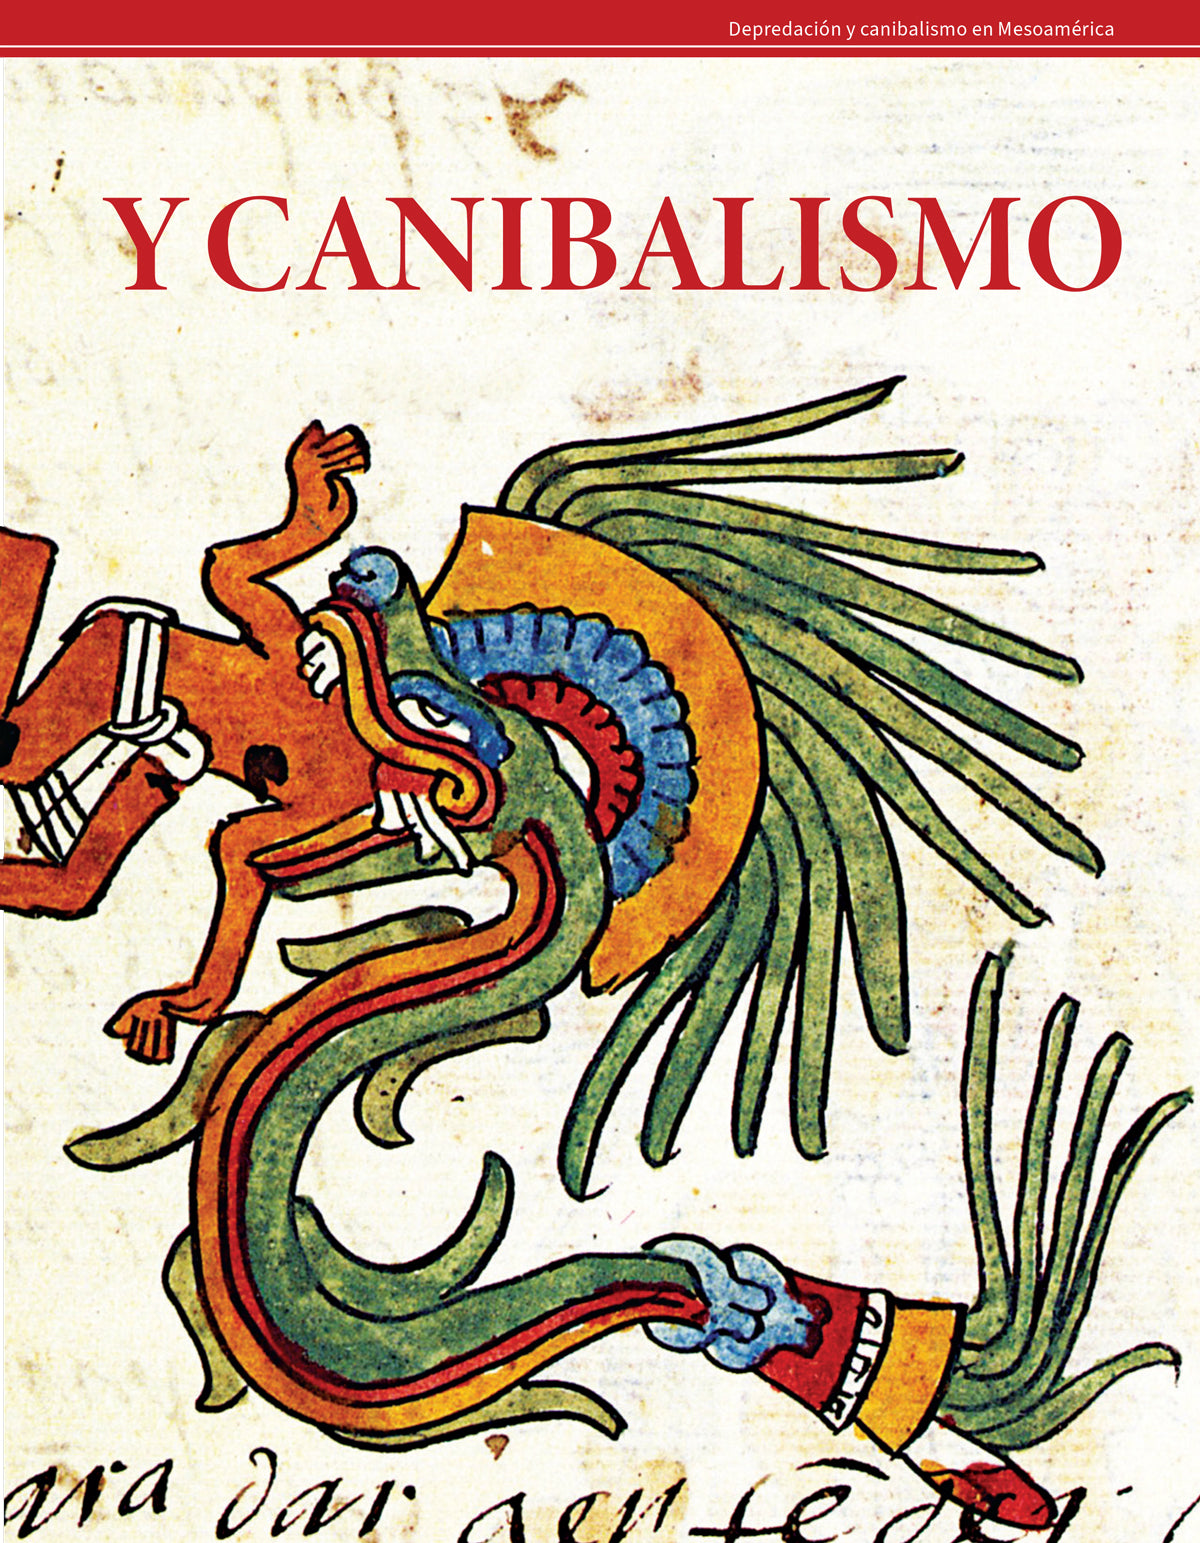 Depredación y canibalismo en Mesoamérica